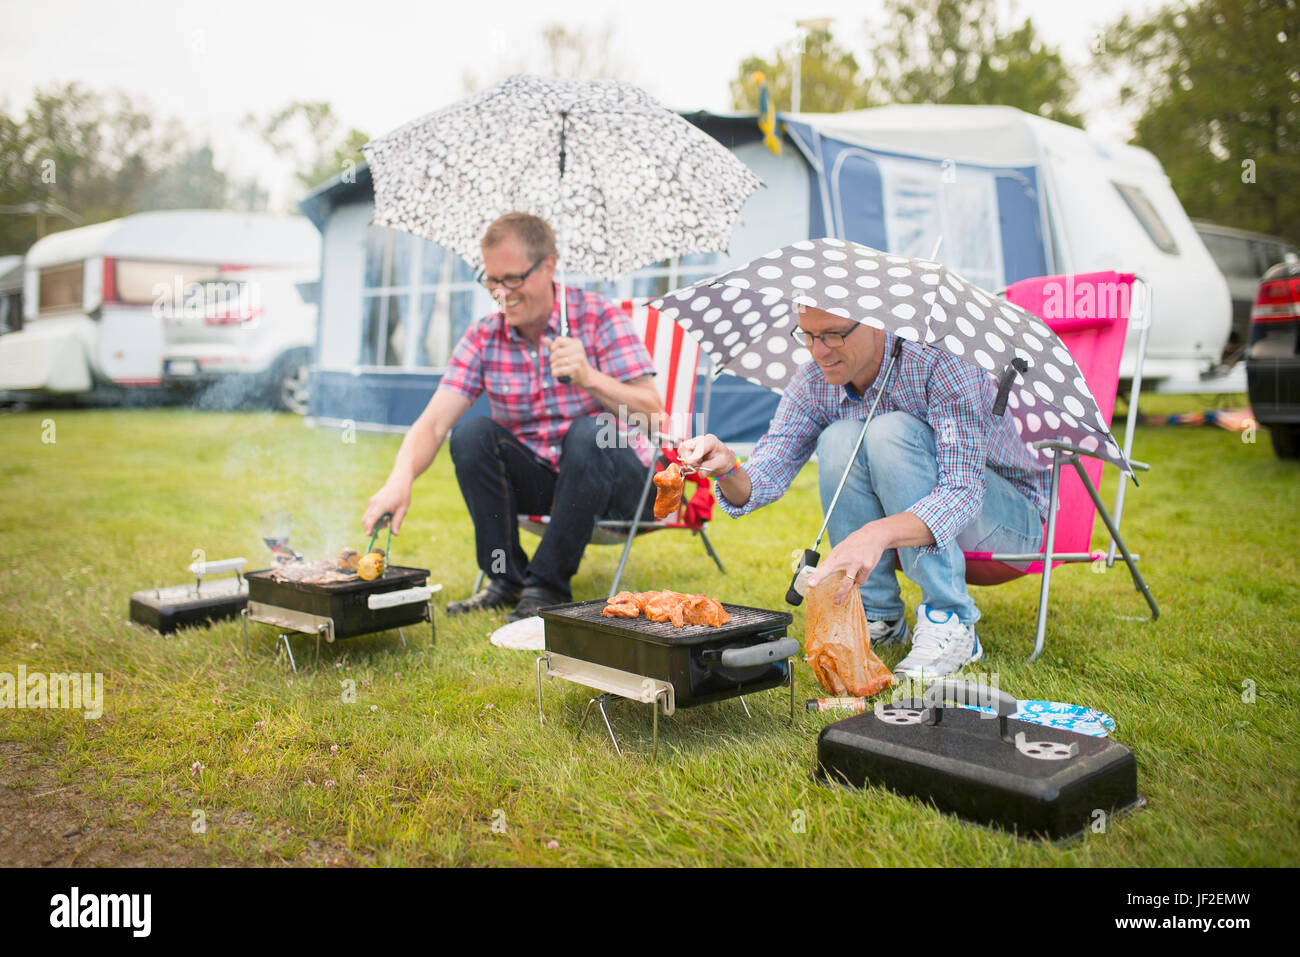 Männer Grillen in Regen Stockfotografie - Alamy